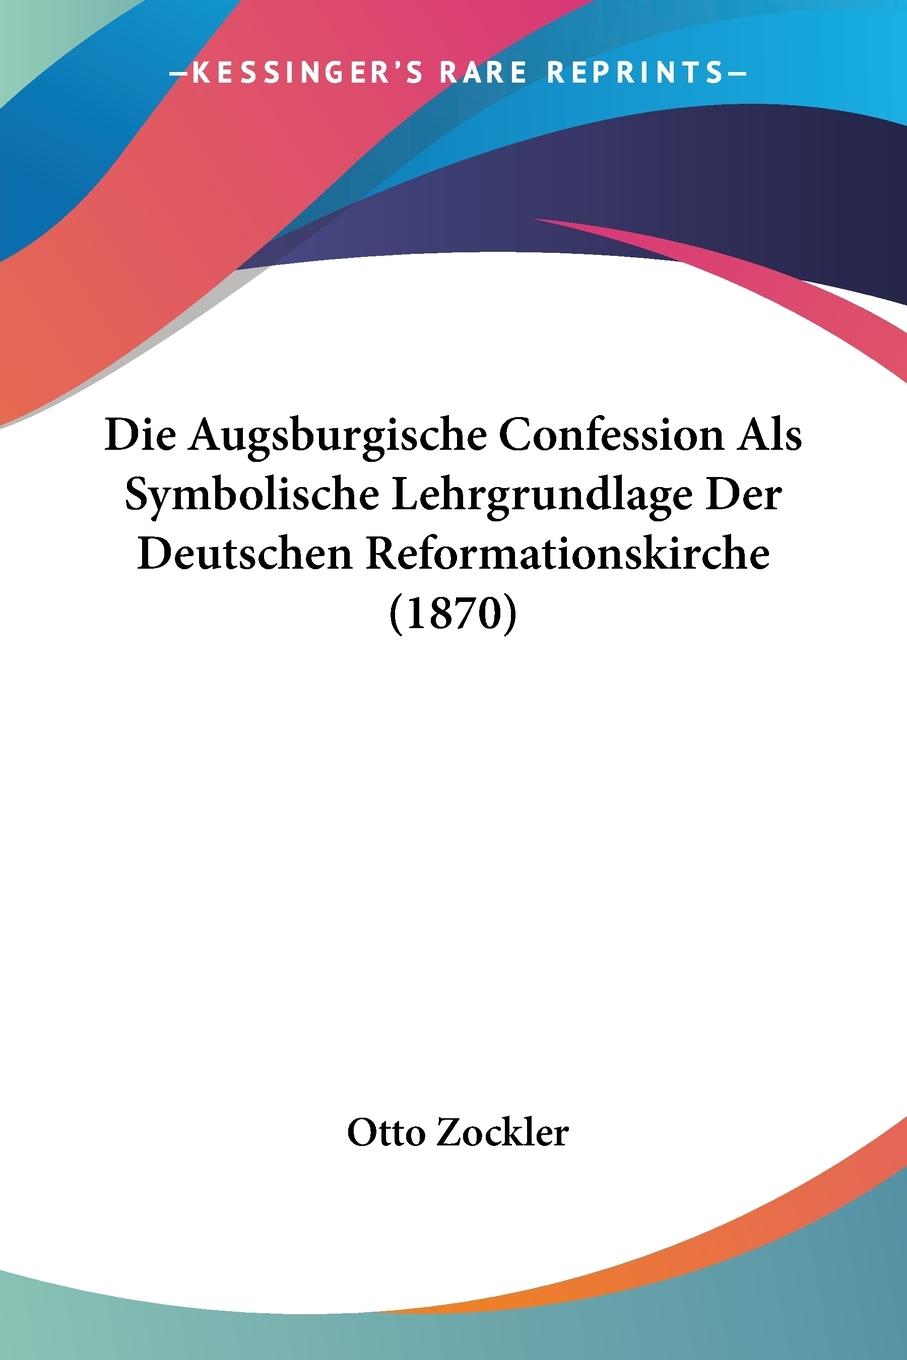 Die Augsburgische Confession Als Symbolische Lehrgrundlage Der Deutschen Reformationskirche (1870) - Zockler, Otto